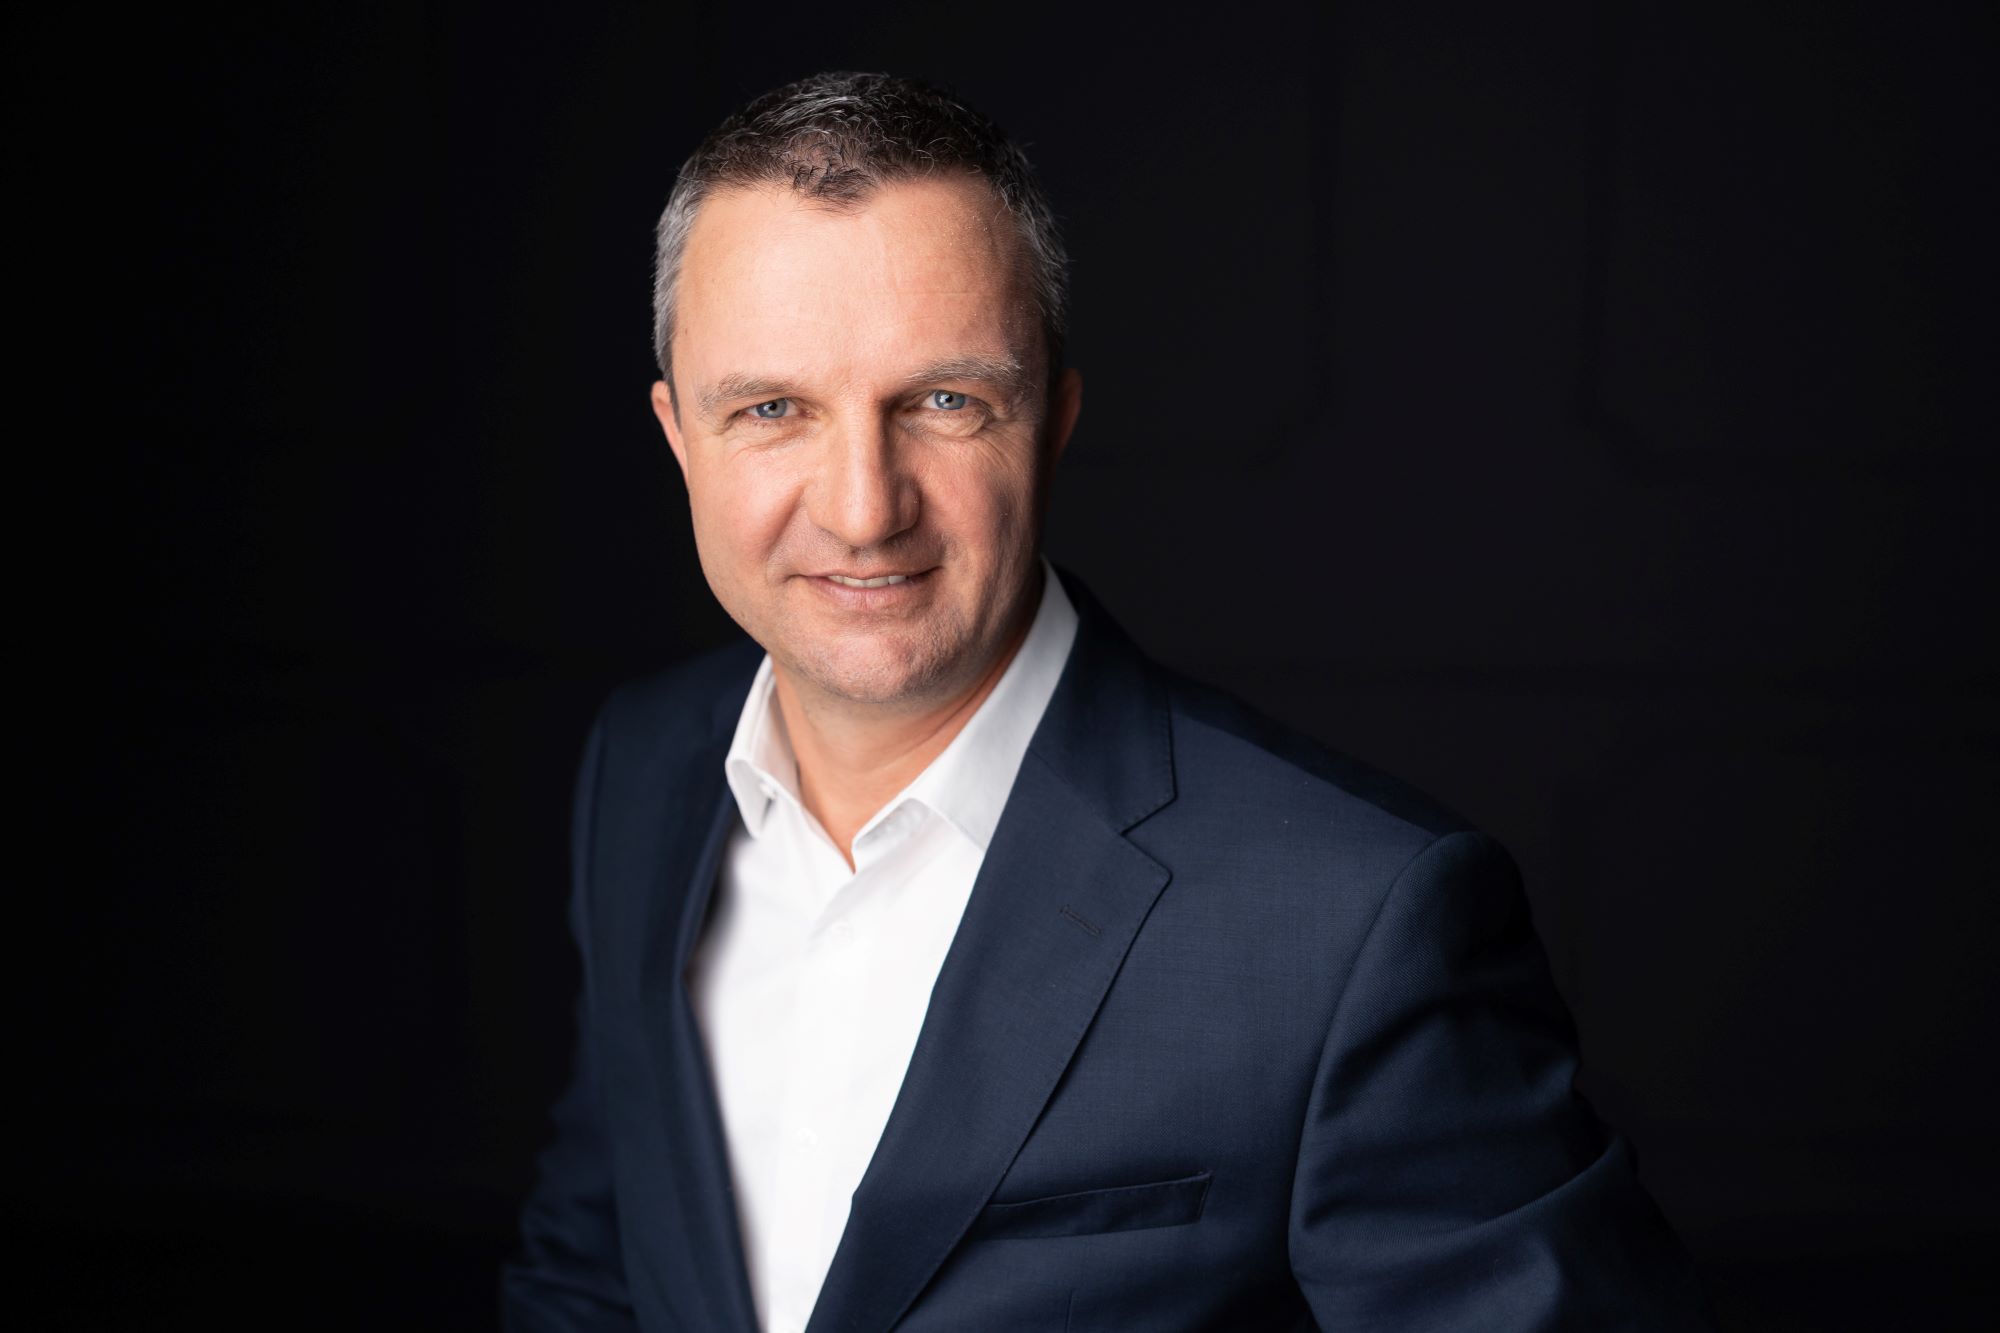 Tiberiu Dobre Named Vice President at Samsung Romania & Bulgaria